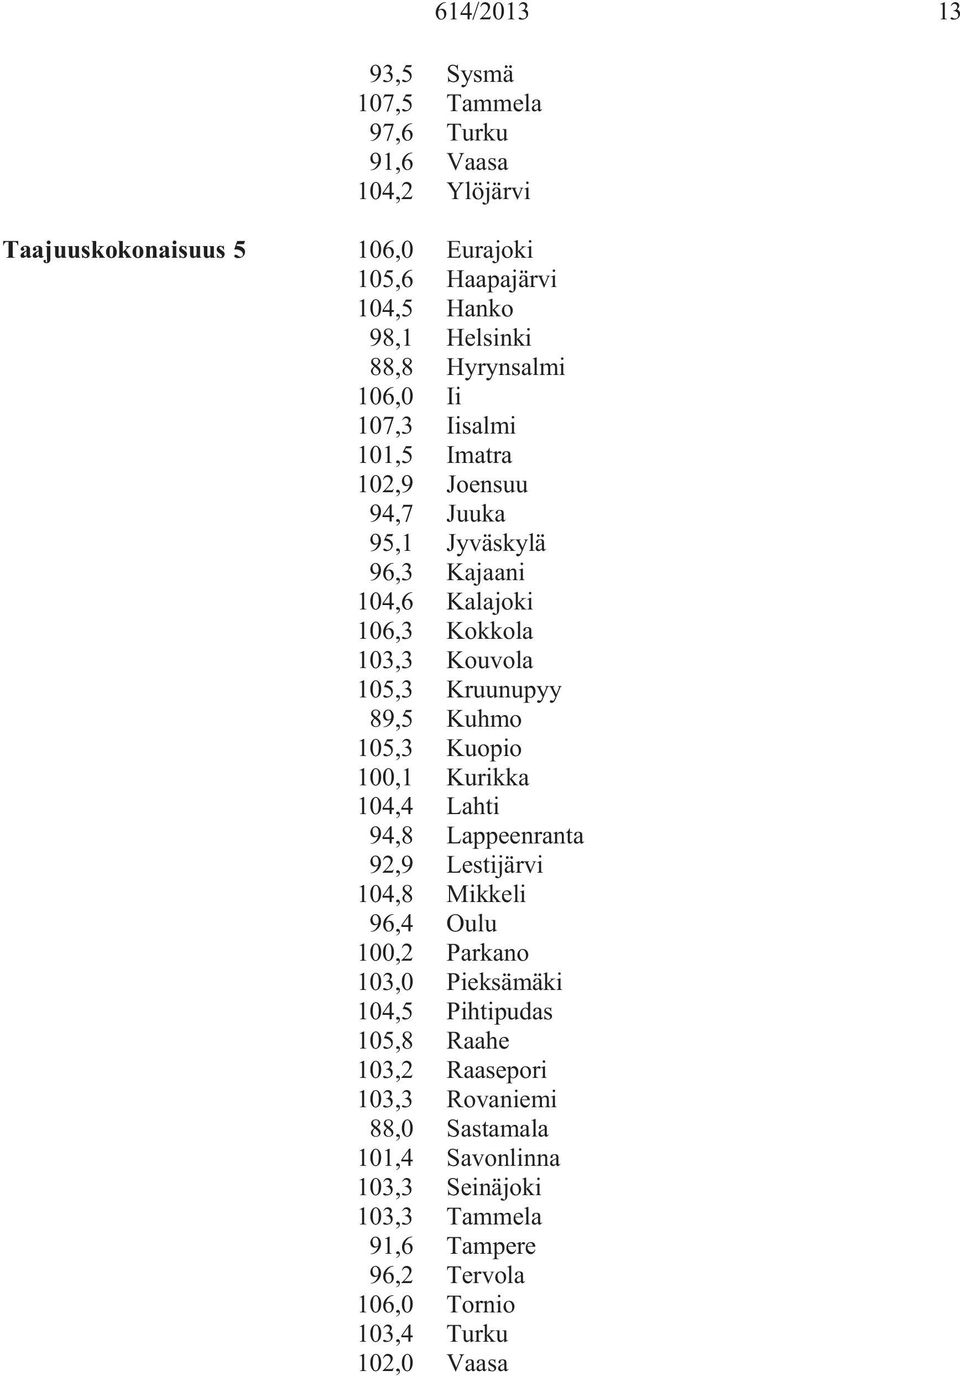 89,5 Kuhmo 105,3 Kuopio 100,1 Kurikka 104,4 Lahti 94,8 Lappeenranta 92,9 Lestijärvi 104,8 Mikkeli 96,4 Oulu 100,2 Parkano 103,0 Pieksämäki 104,5 Pihtipudas